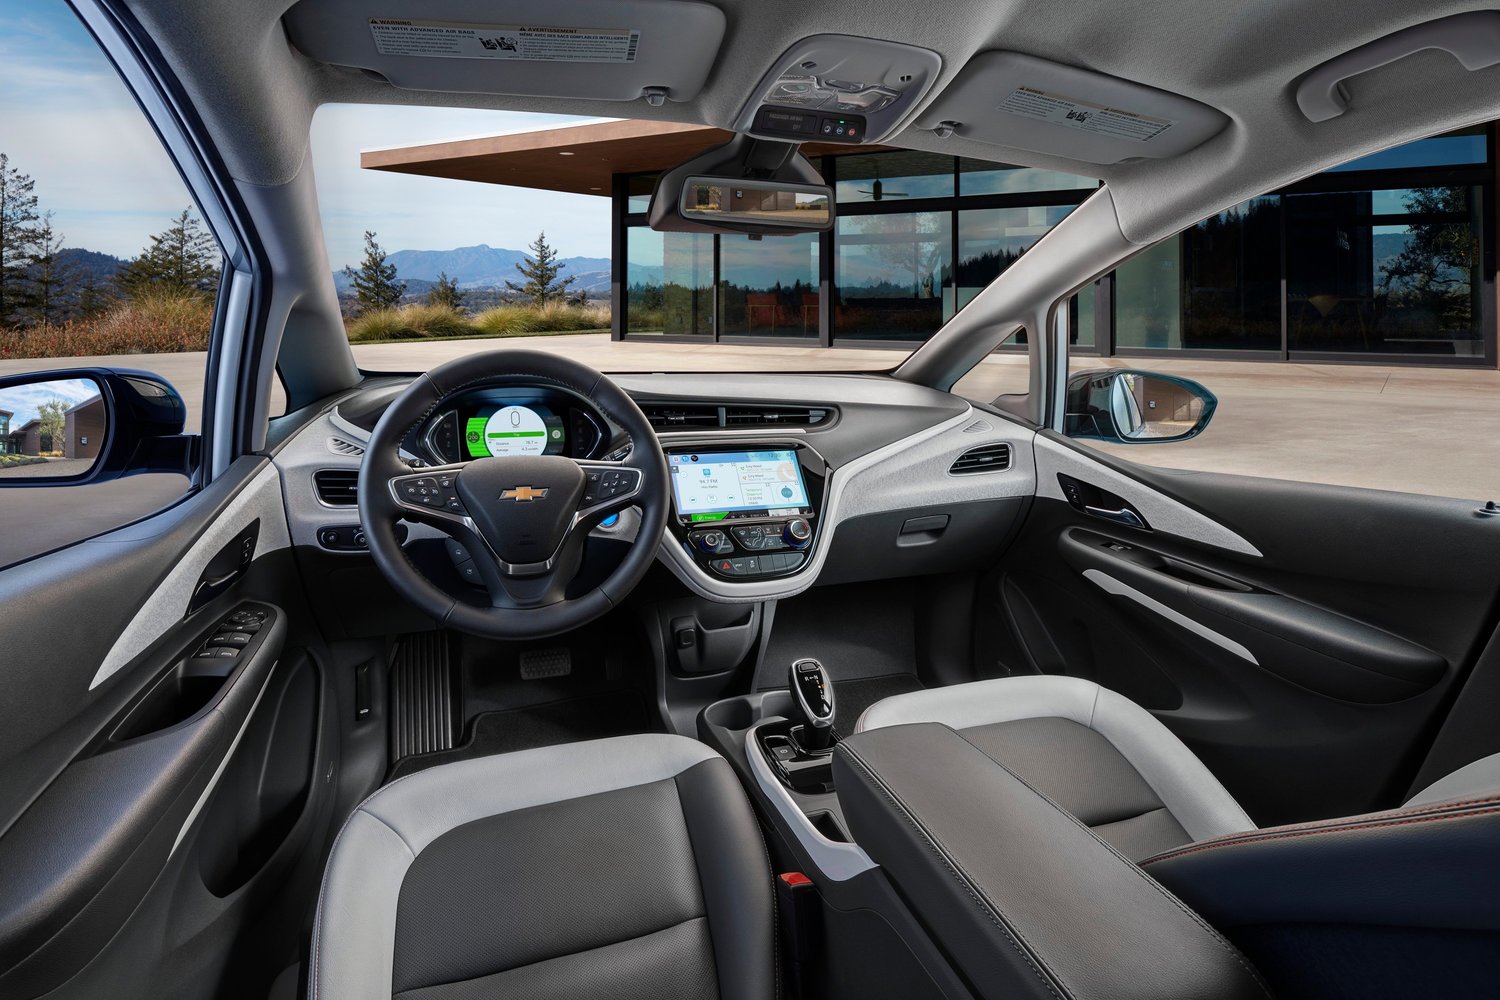 хэтчбек 5 дв. Chevrolet Bolt 2016г выпуска модификация Комплектация